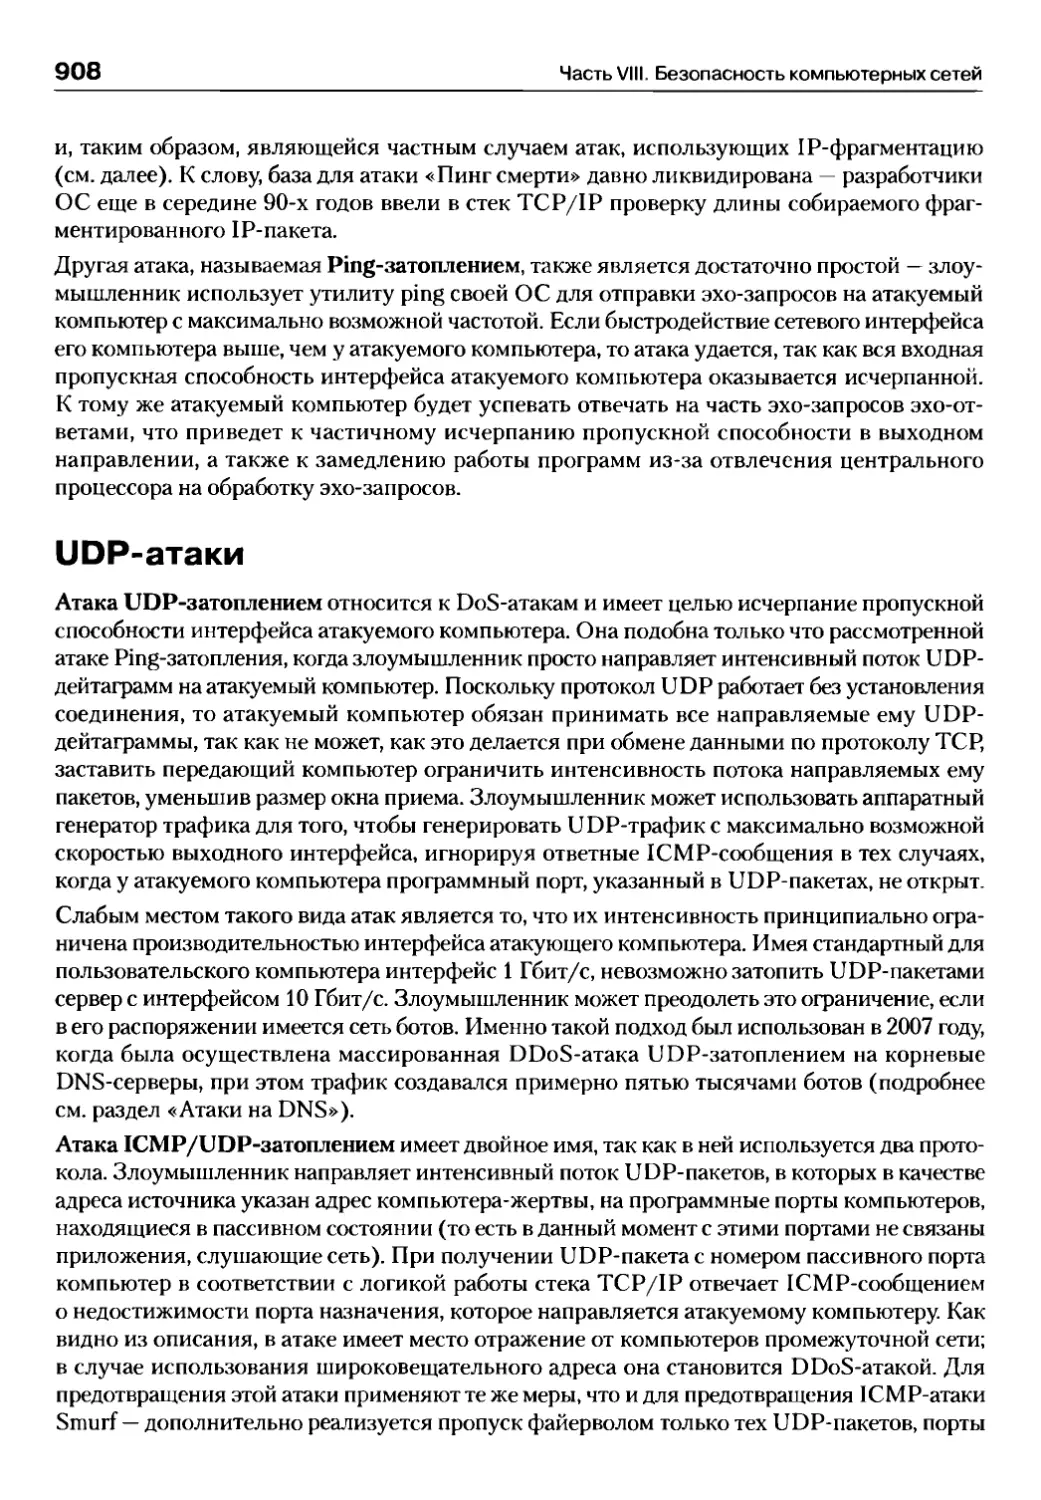 UDP-атаки